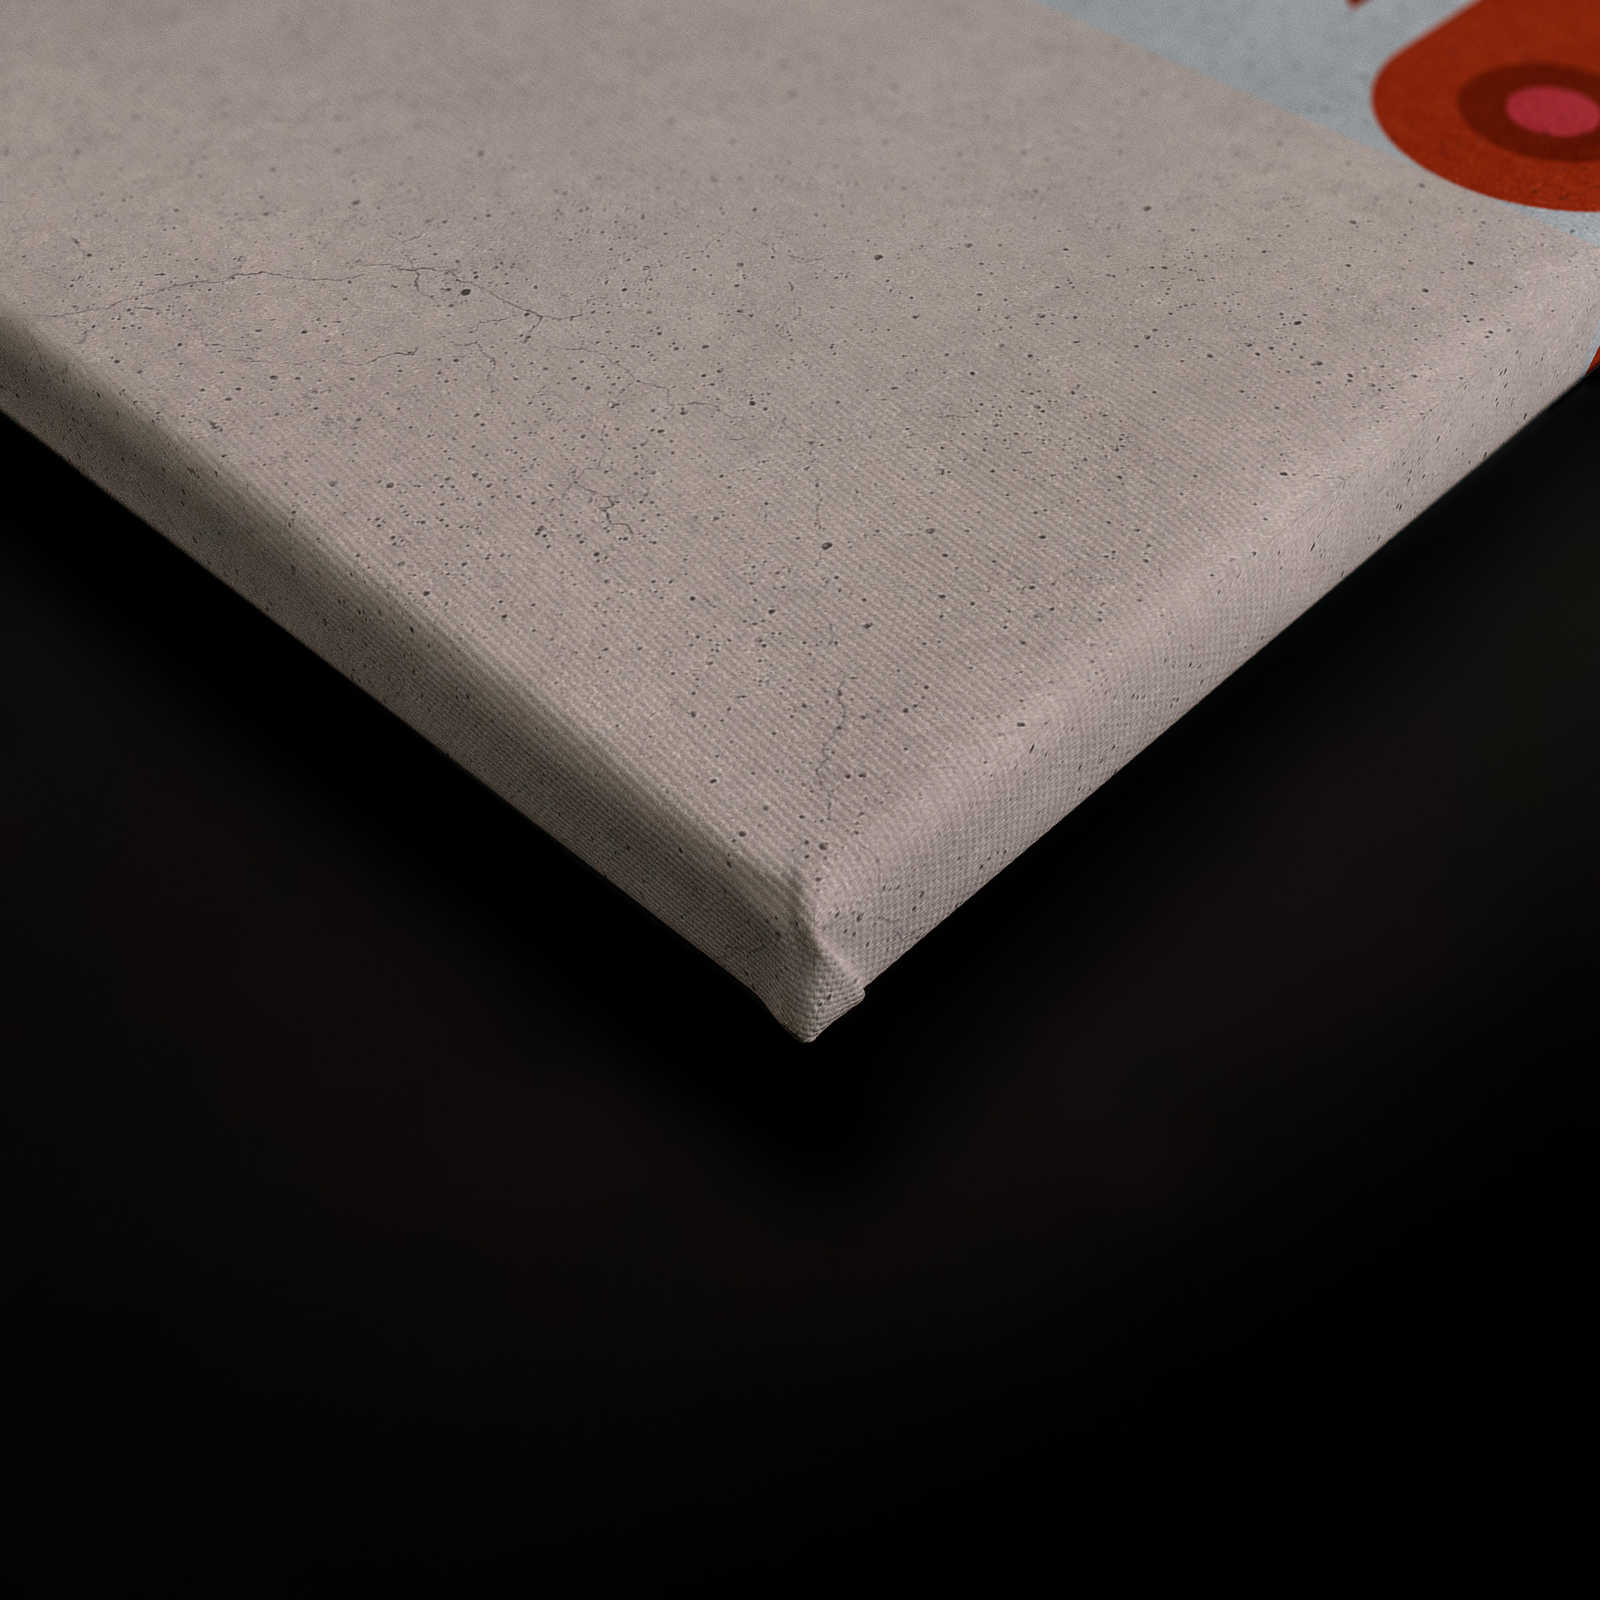             Parejas 3 - Lienzo Pop Art Parejas en Estructura de concreto - 0,90 m x 0,60 m
        